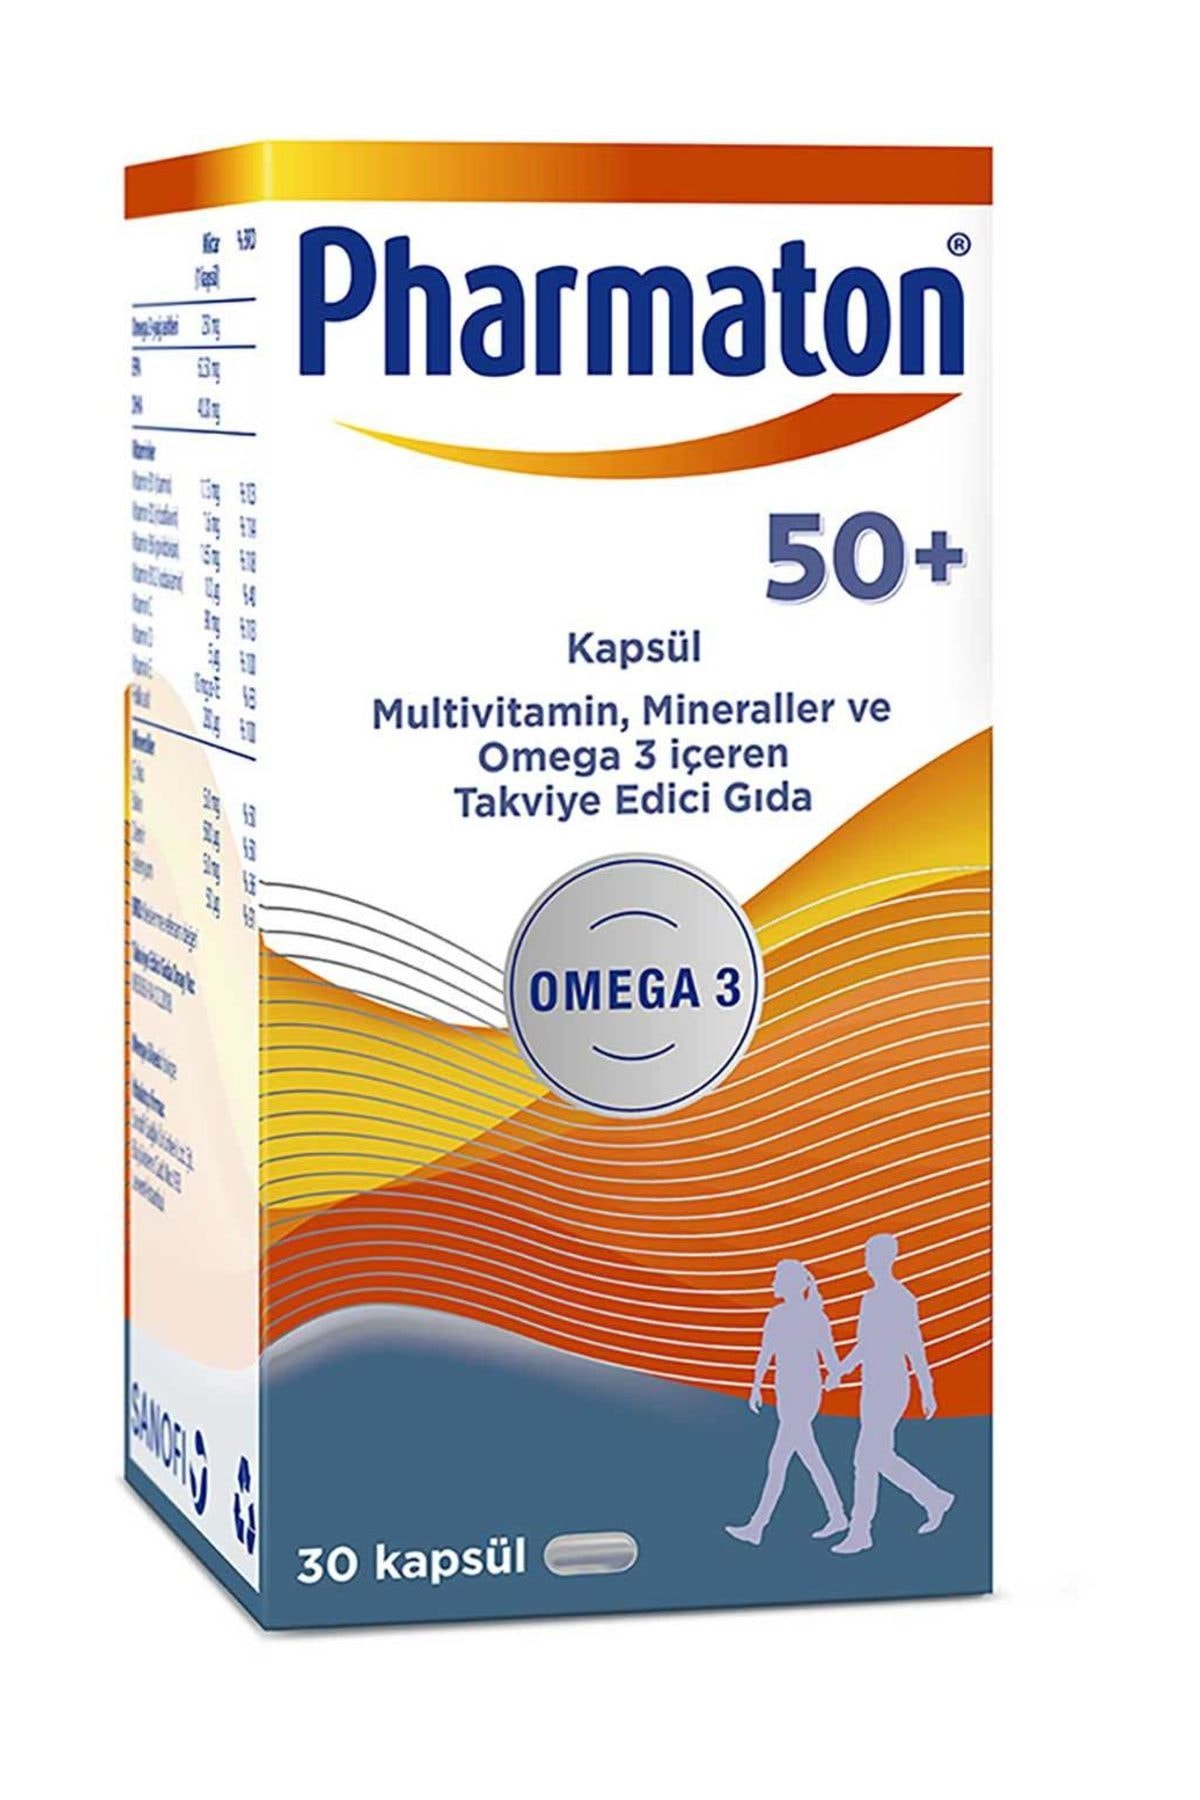 PHARMATON 50 Plus 30 Kapsül - Takviye Edici Gıda